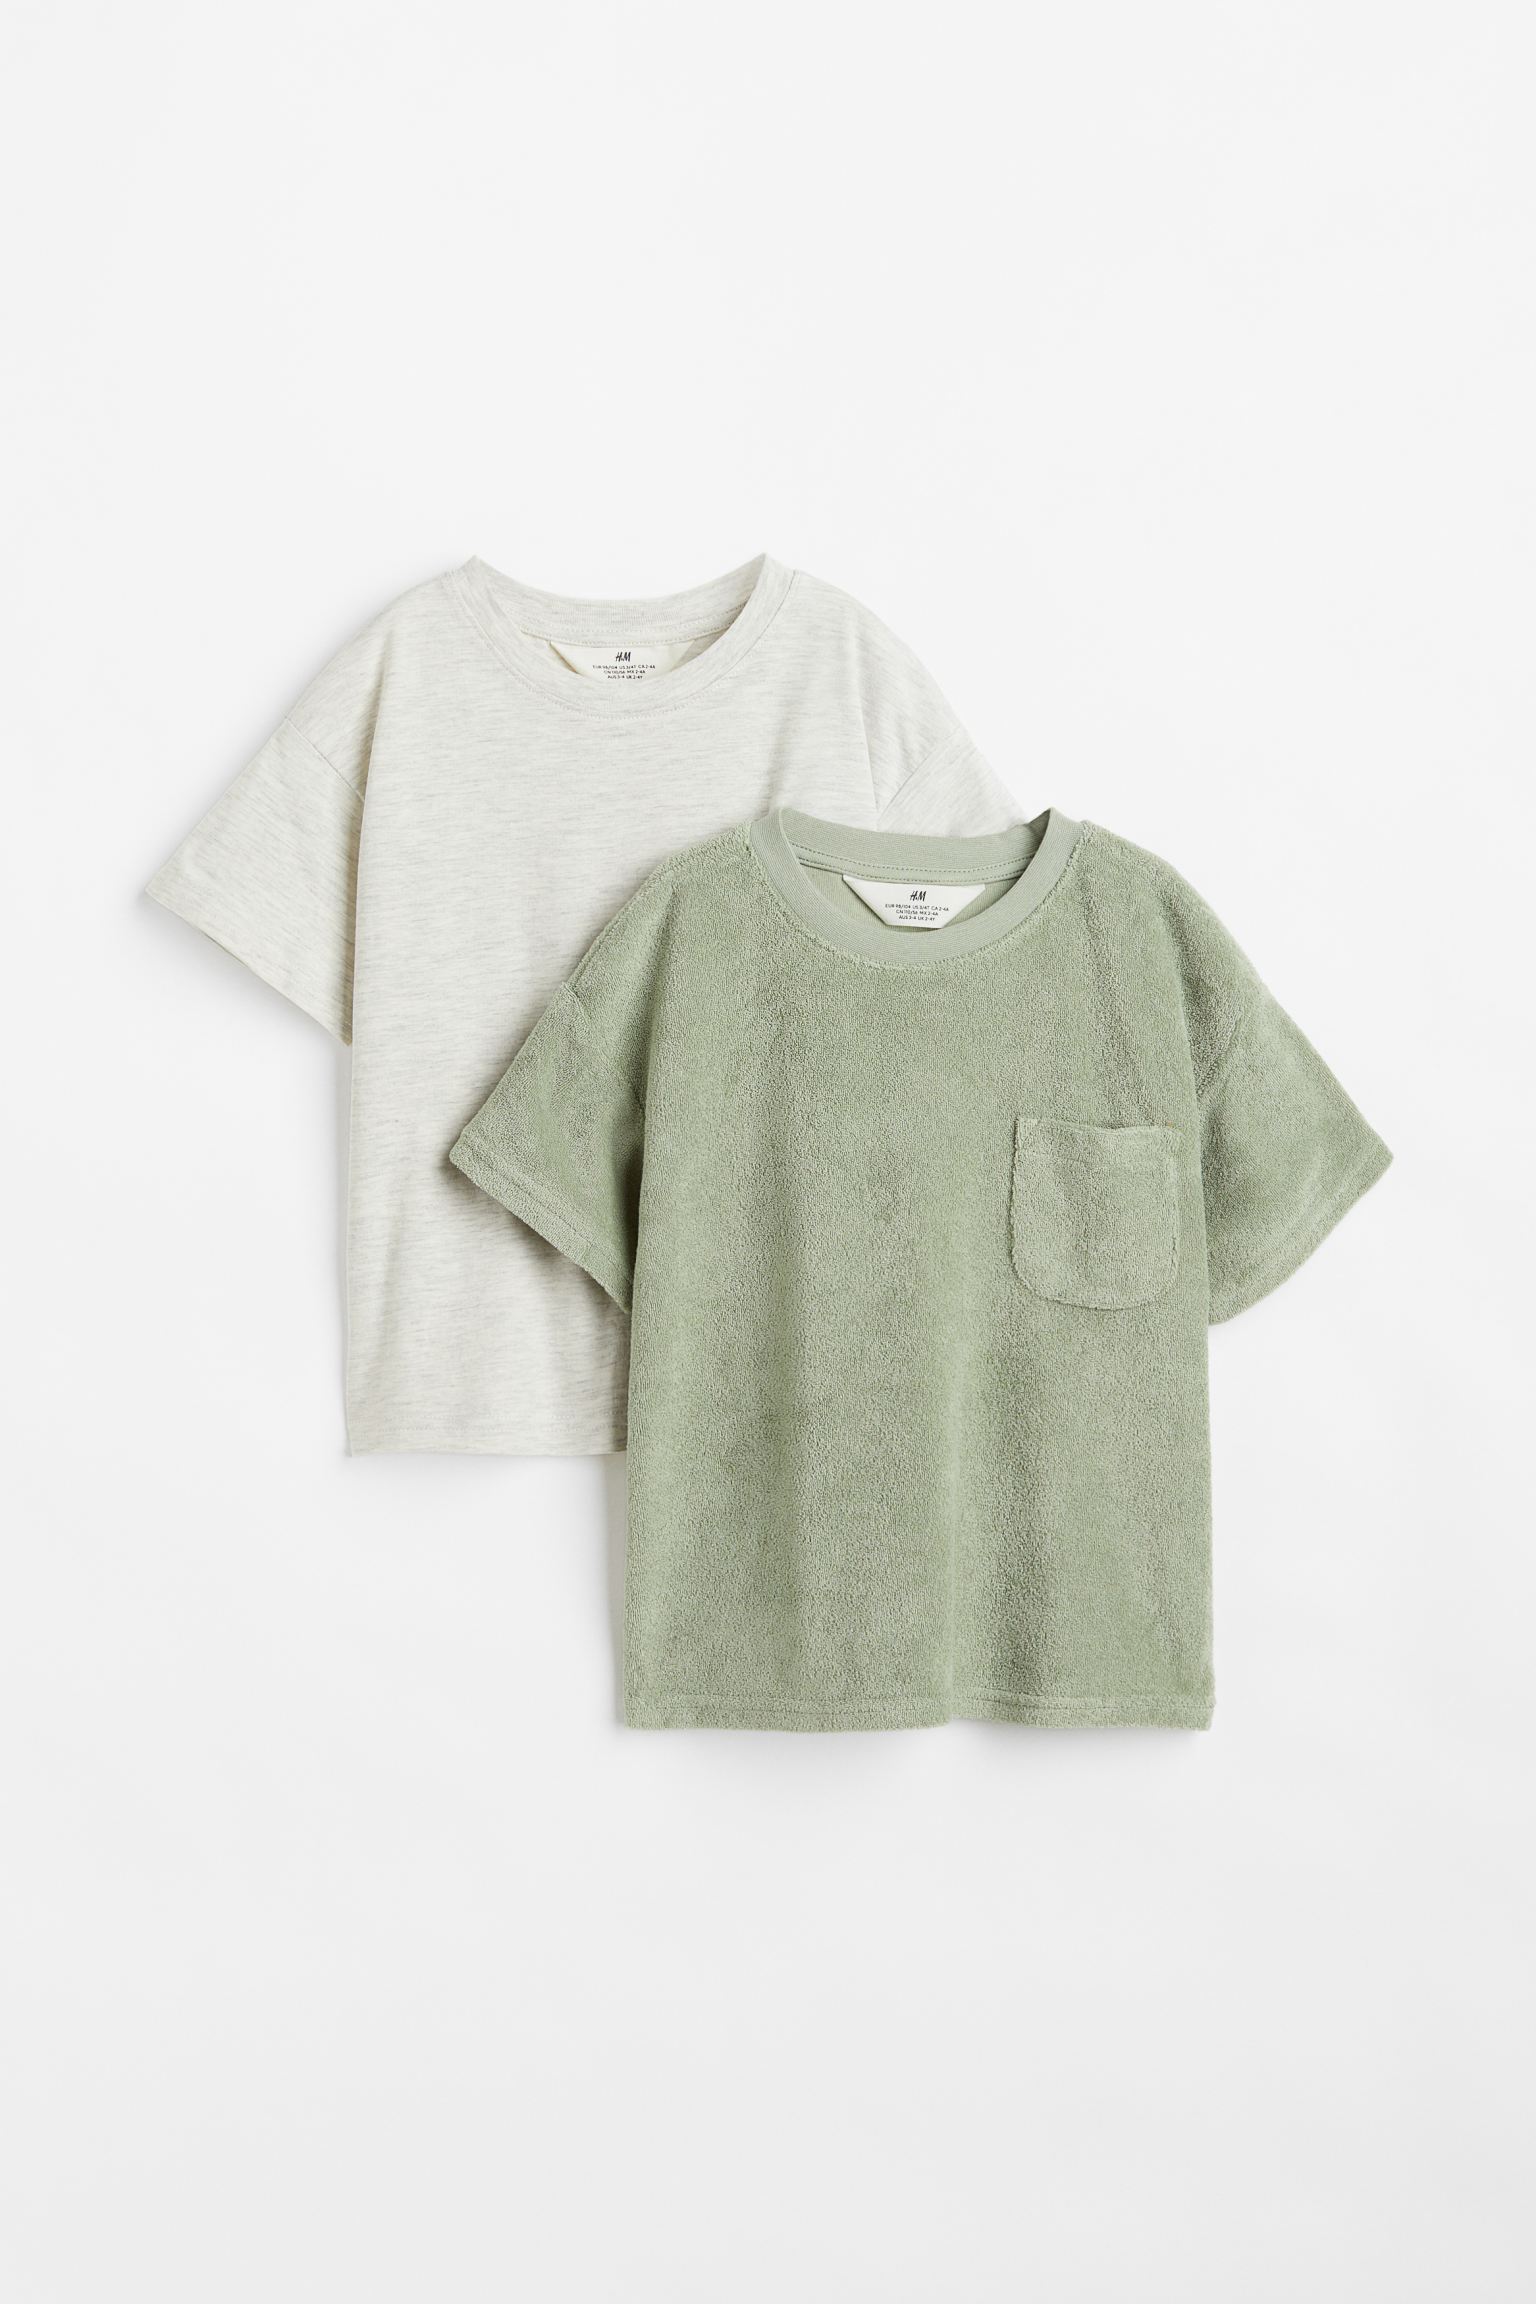 Набор футболок H&M для мальчиков, зелёный, серый-001, размер 134/140, 1078766001, 2 шт.